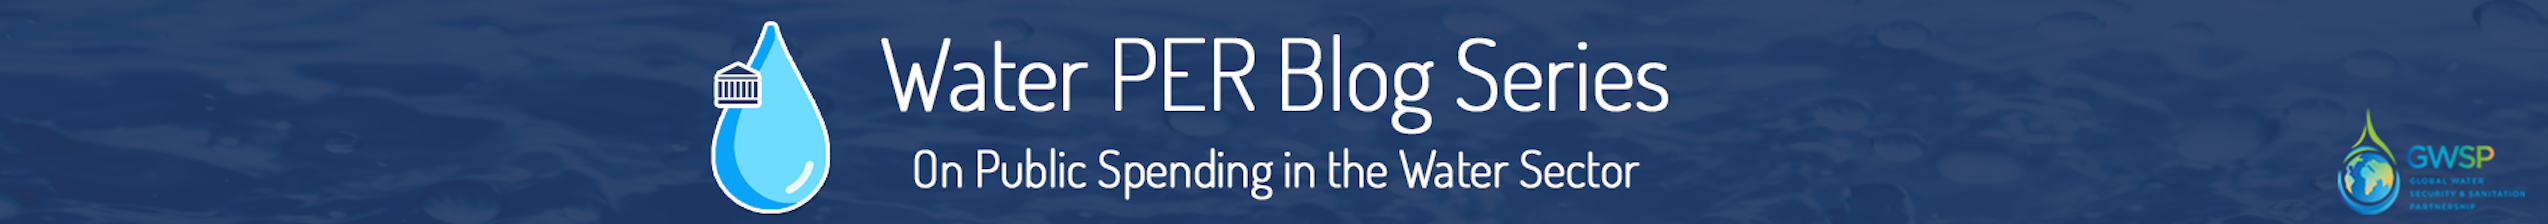 Water PER Blog Series